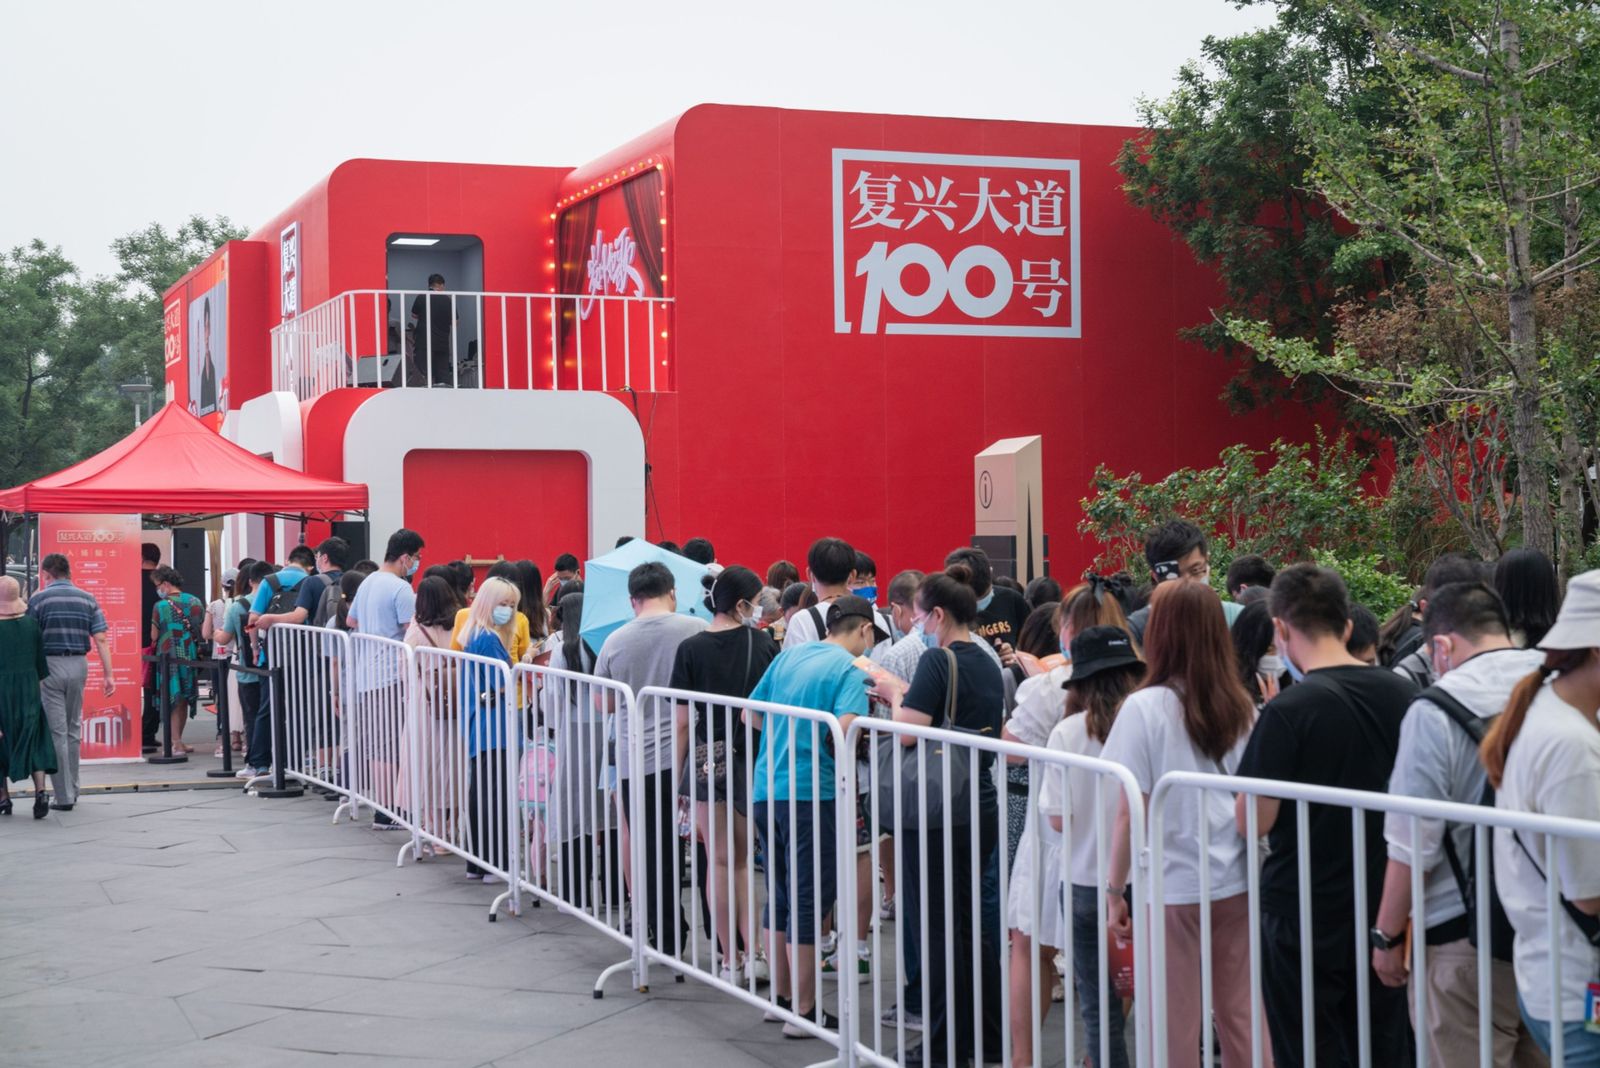 طابور لزوار معرض مؤقت في بكين إحياءً للذكرى المئوية لتأسيس الحزب الشيوعي - 25 يونيو 2021 - Bloomberg